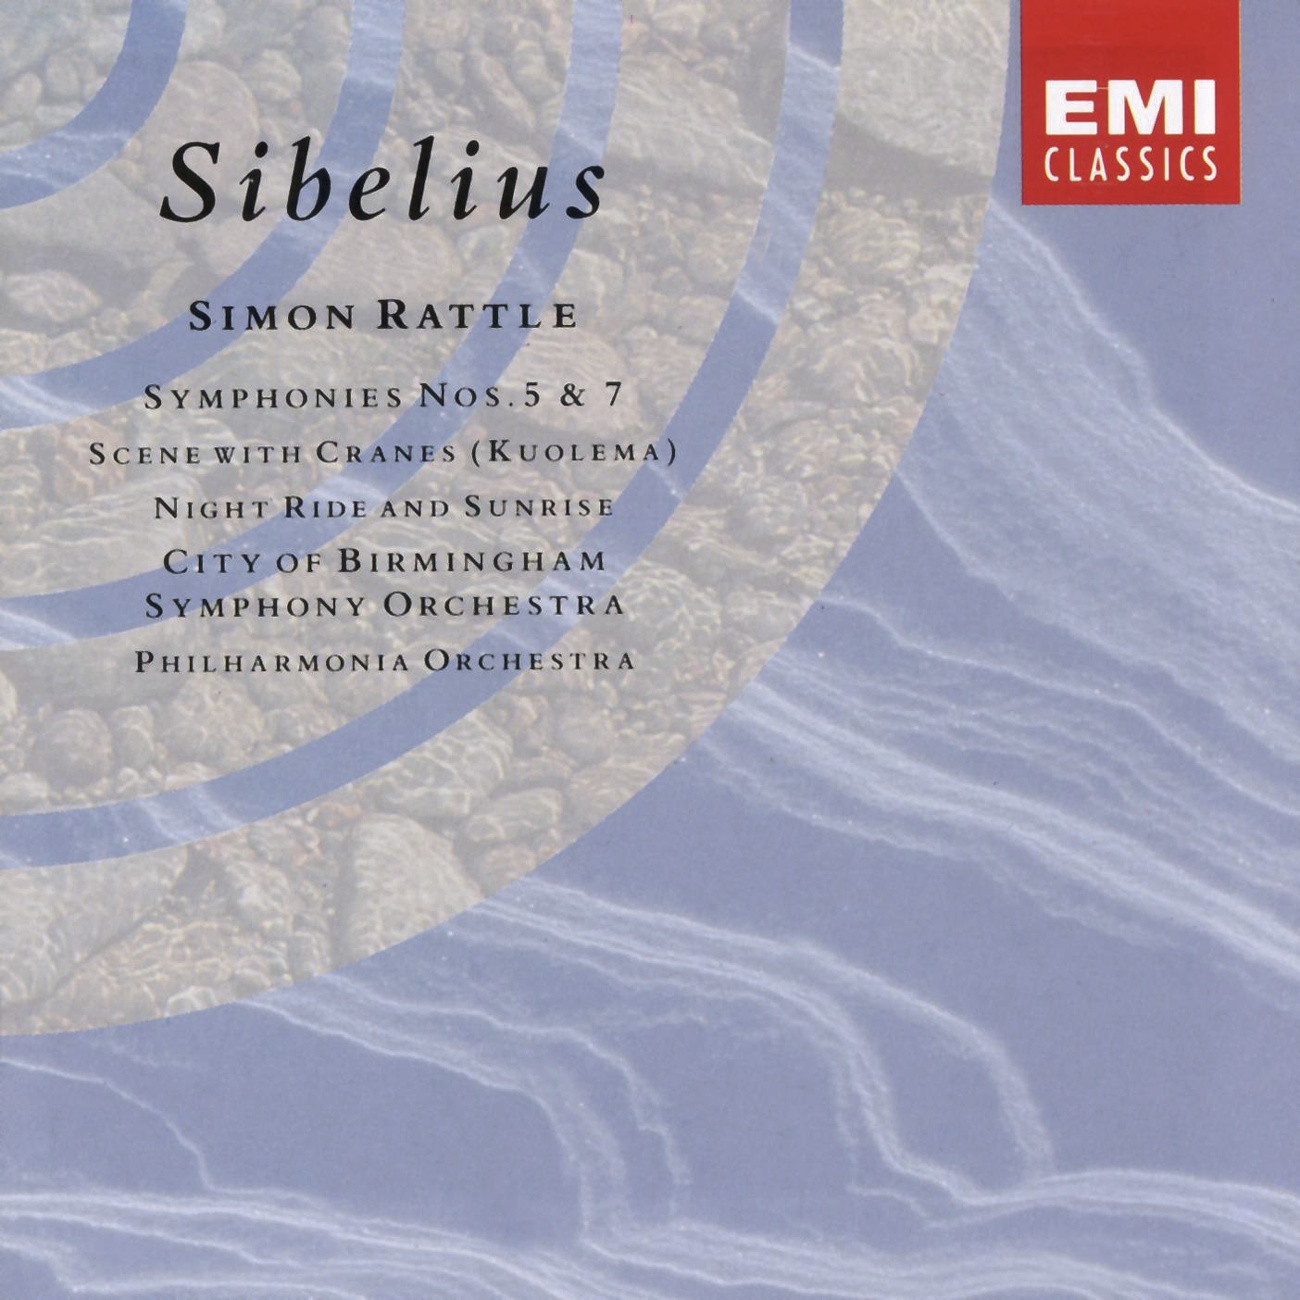 Sibelius: Symphony No. 7 in C, Op. 105: Vivace-Presto-Adagio